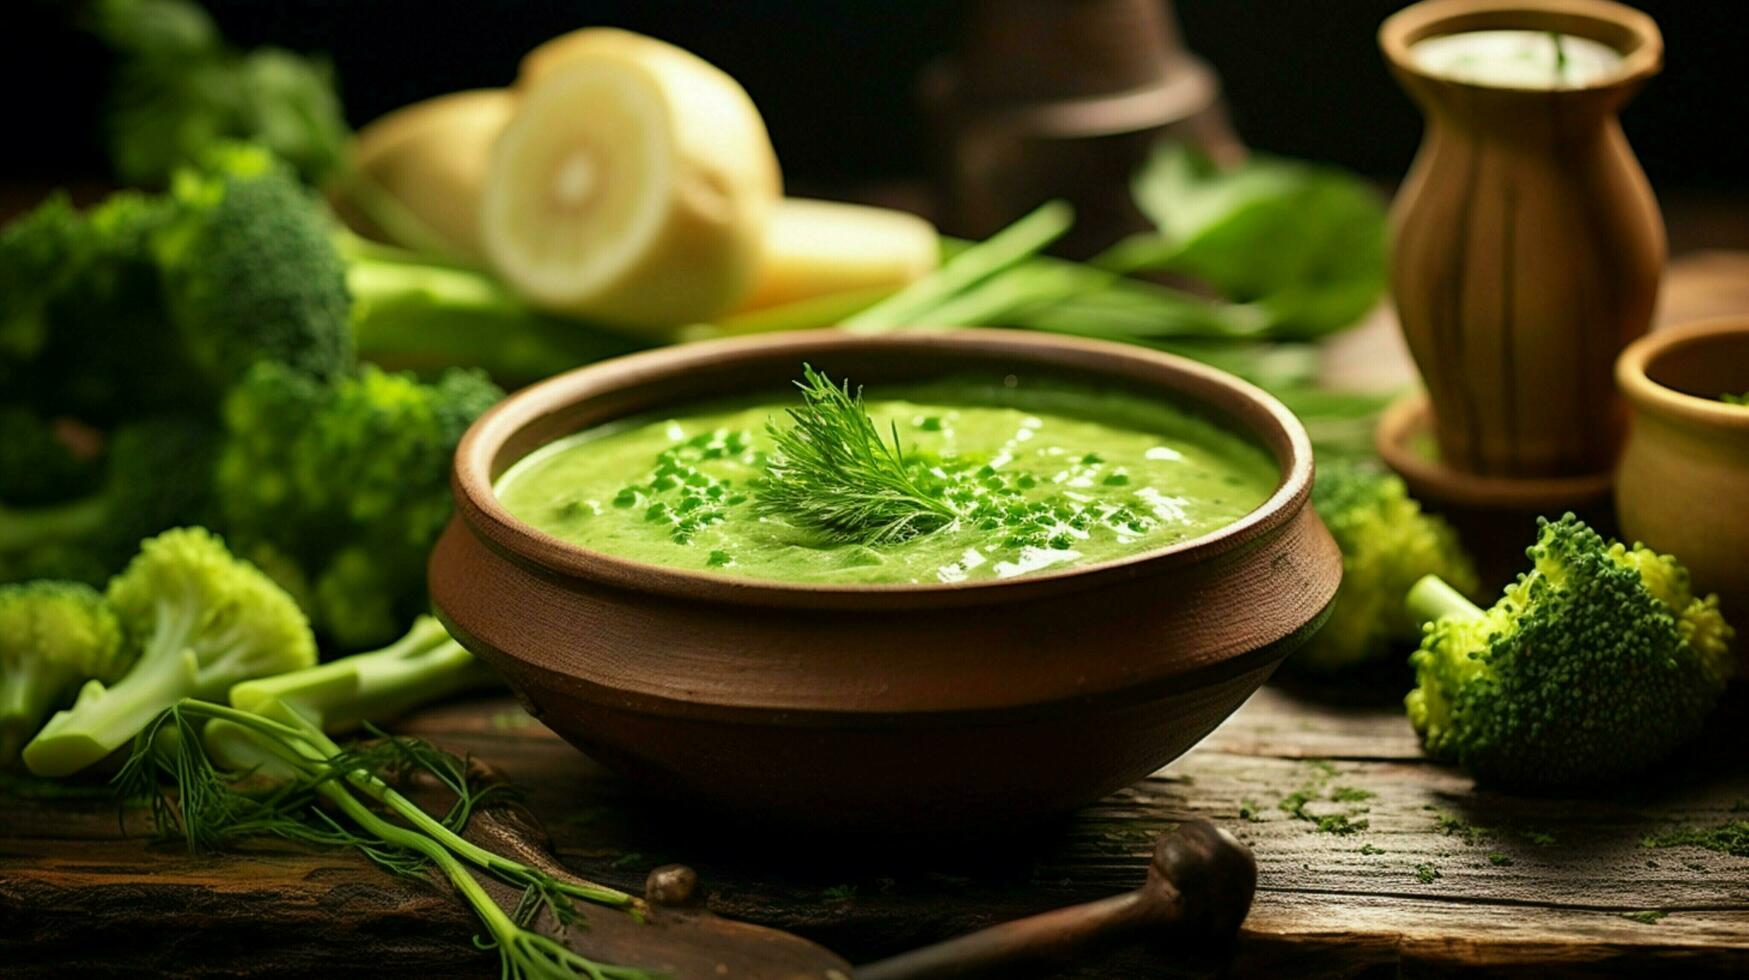 vers vegetarisch soep met biologisch groen groenten foto